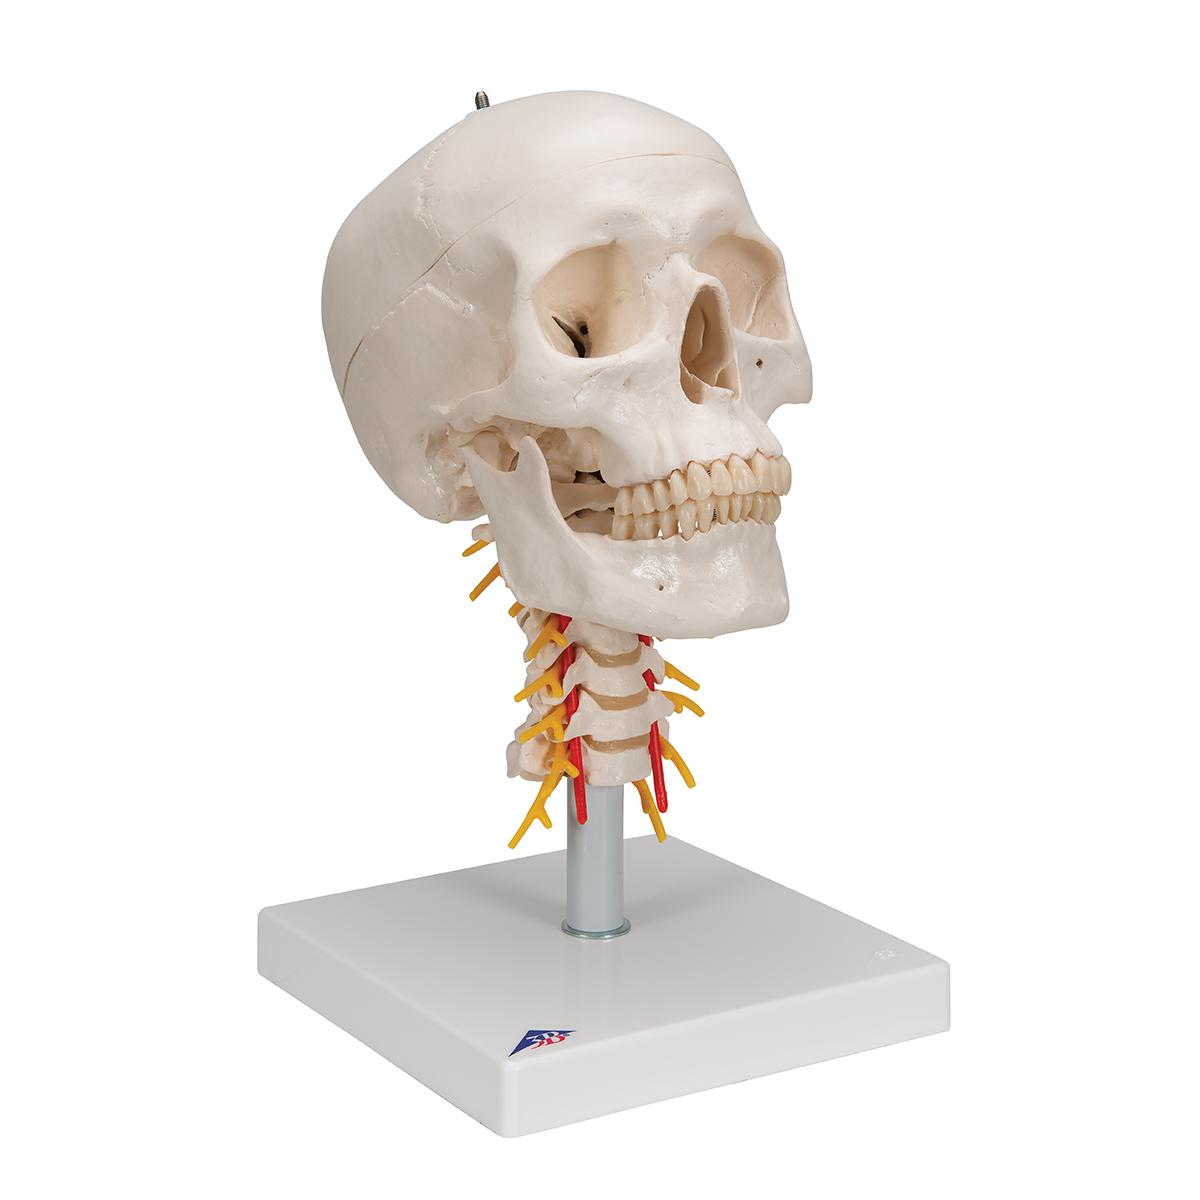 Между черепом и позвоночником. 3b Scientific череп. Модель черепа человека. Череп с позвоночником. Макет черепа человека.